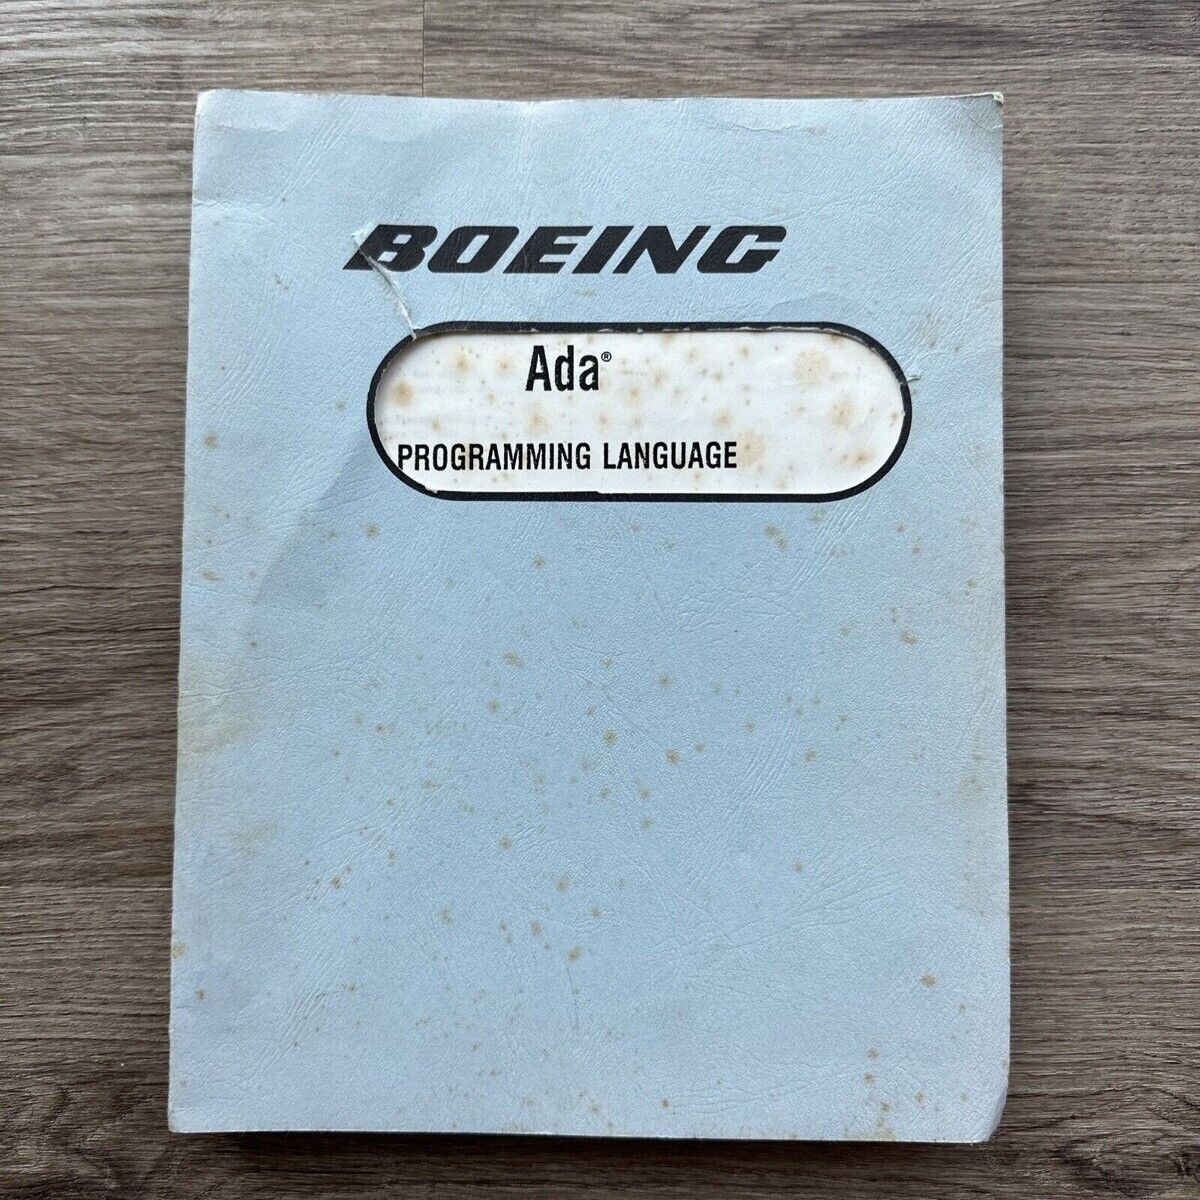 Boeing Ada Programming Language